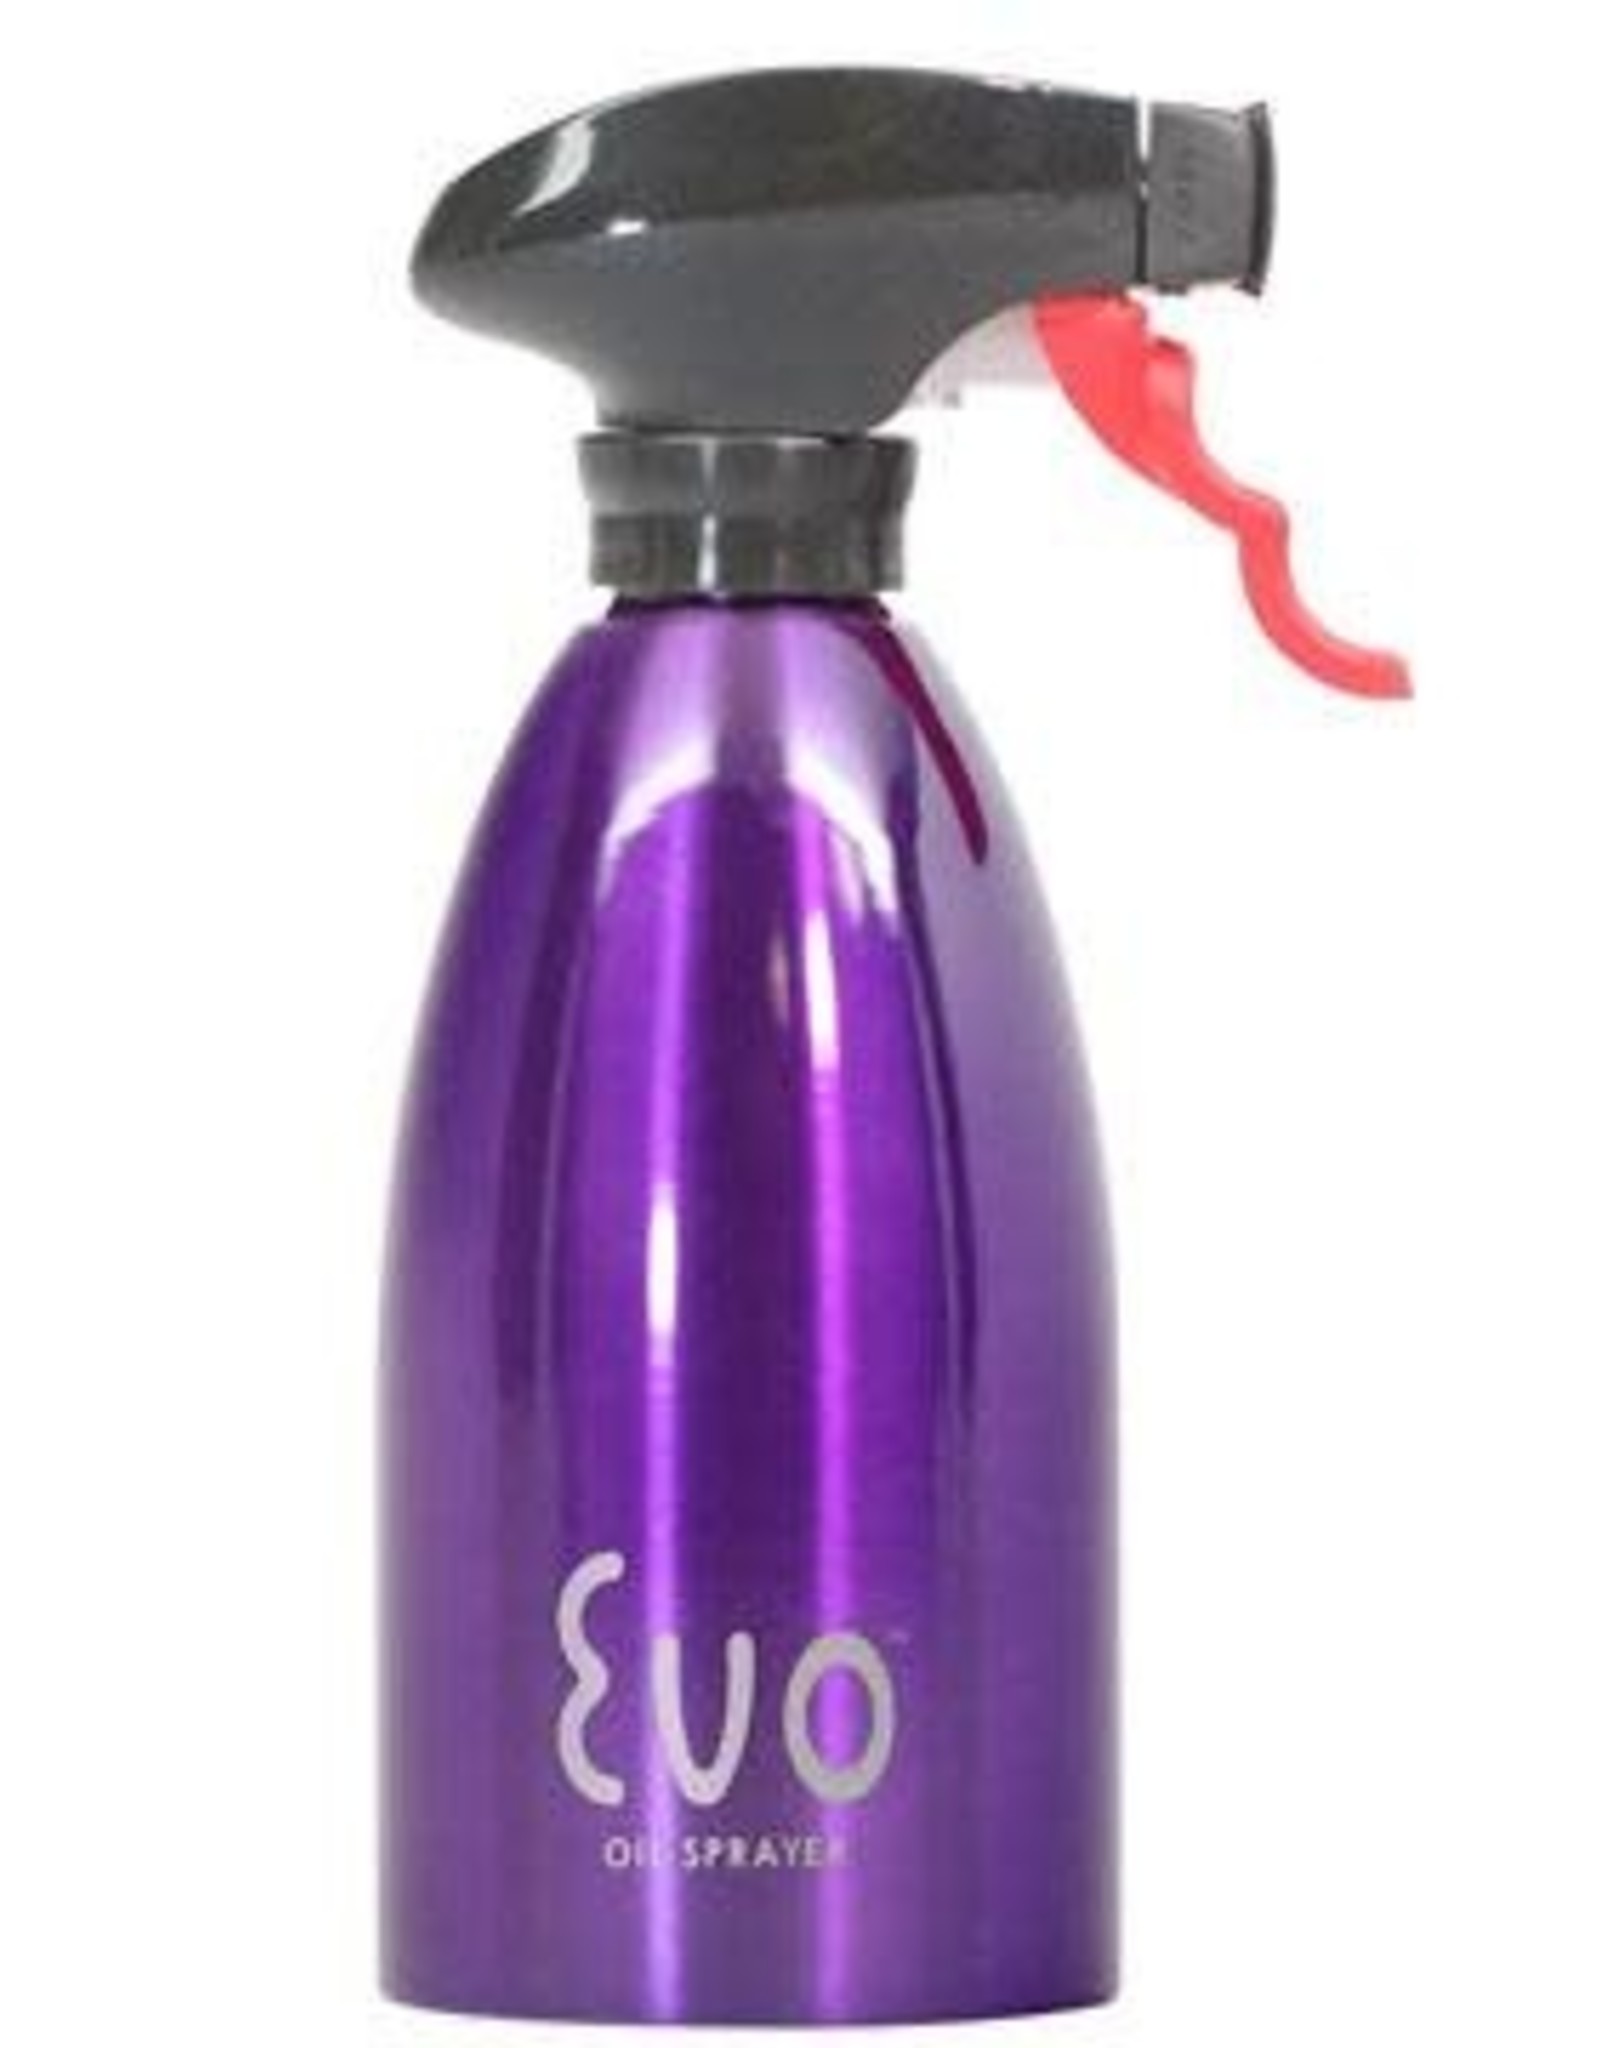 EVO Oil Sprayer 16 oz